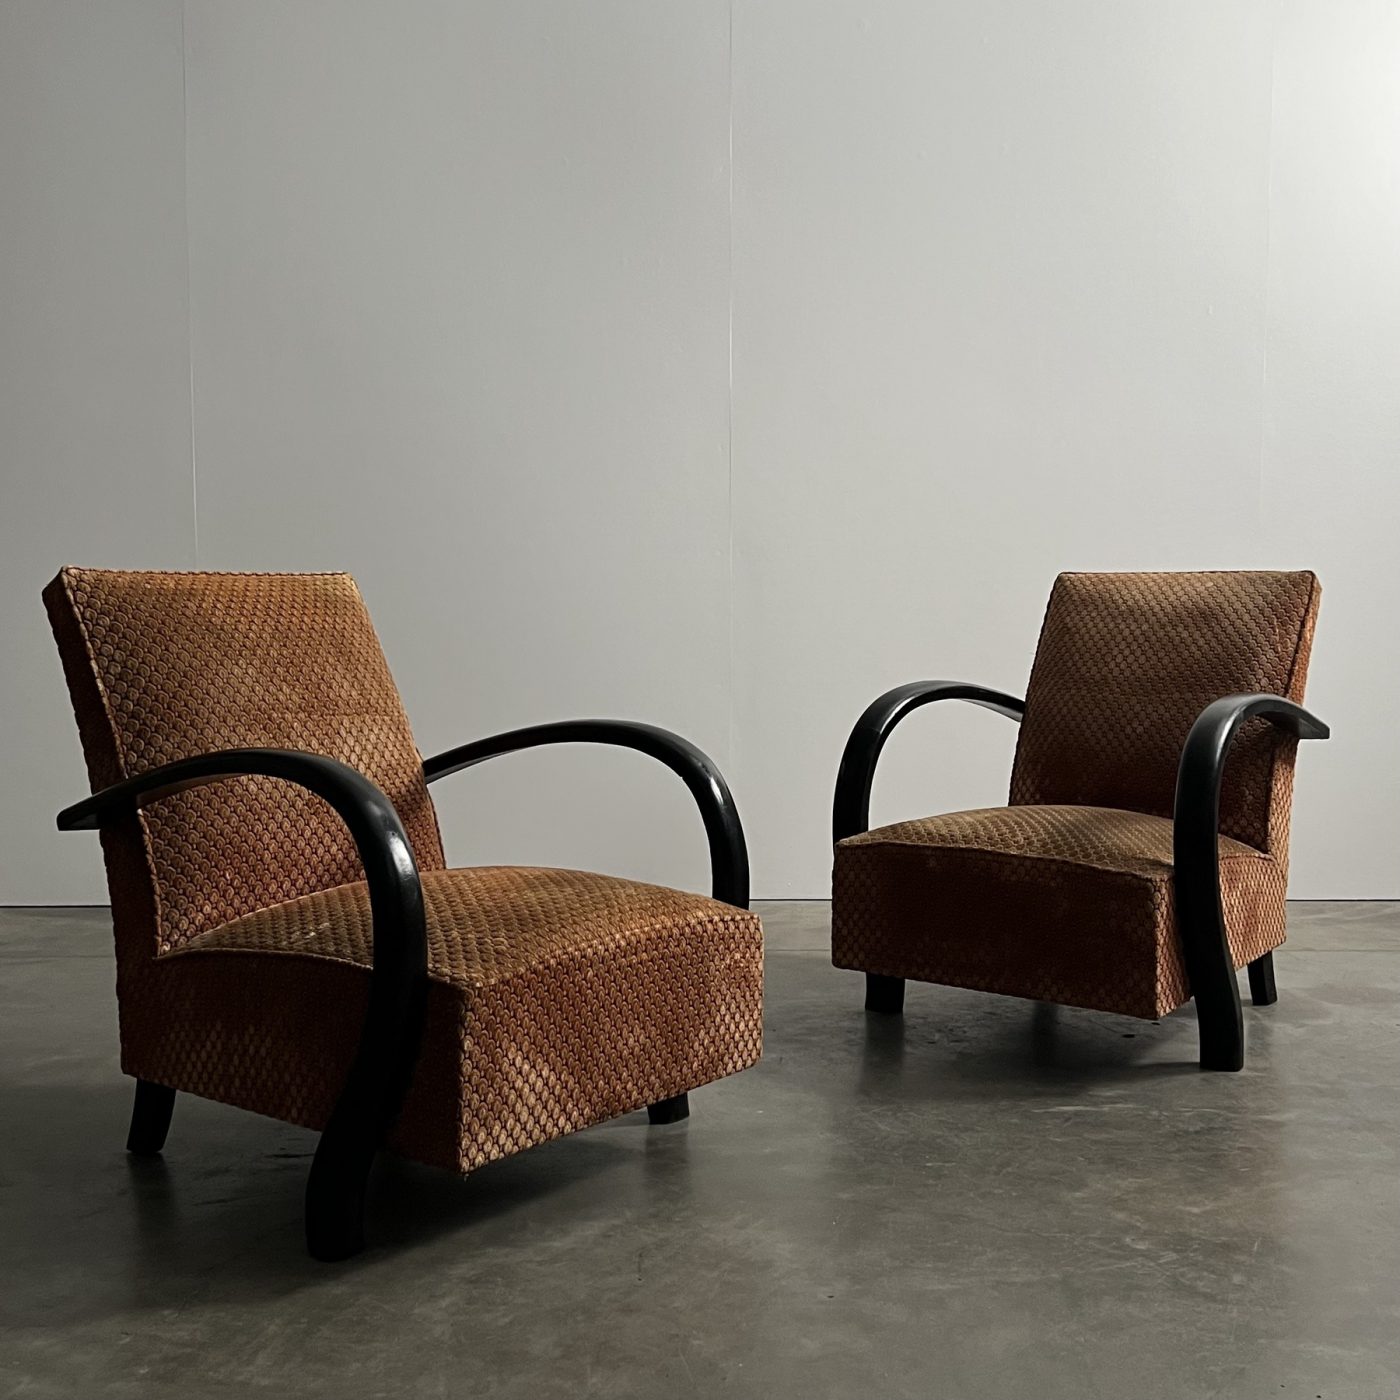 objet-vagabond-artdeco-armchairs0003